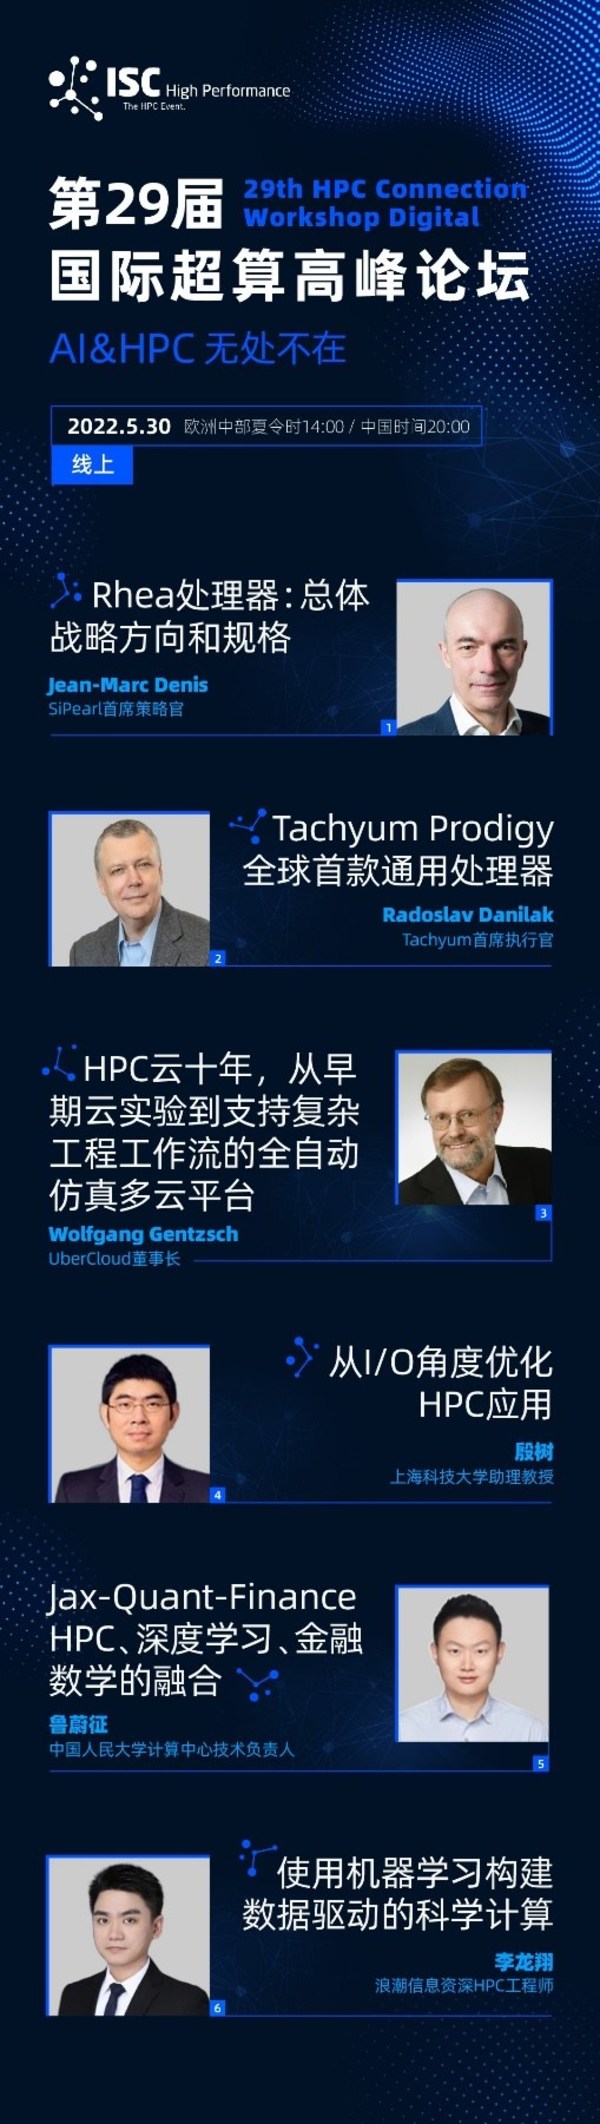 國際超算高峰論壇將在ISC22舉行，探討AI和HPC計算融合